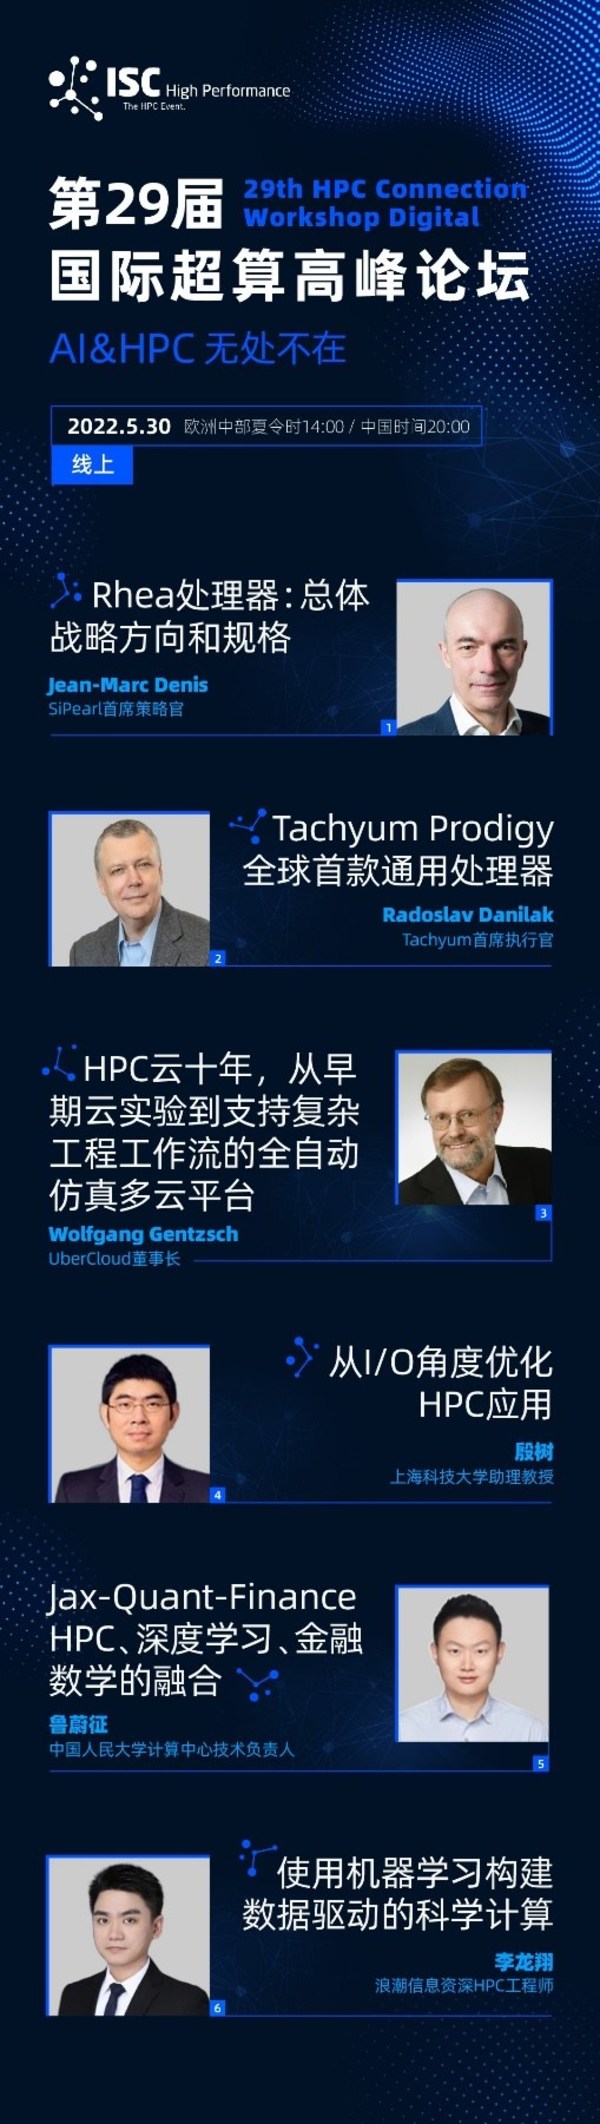 國際超算高峰論壇將在ISC22舉行，探討AI和HPC計算融合